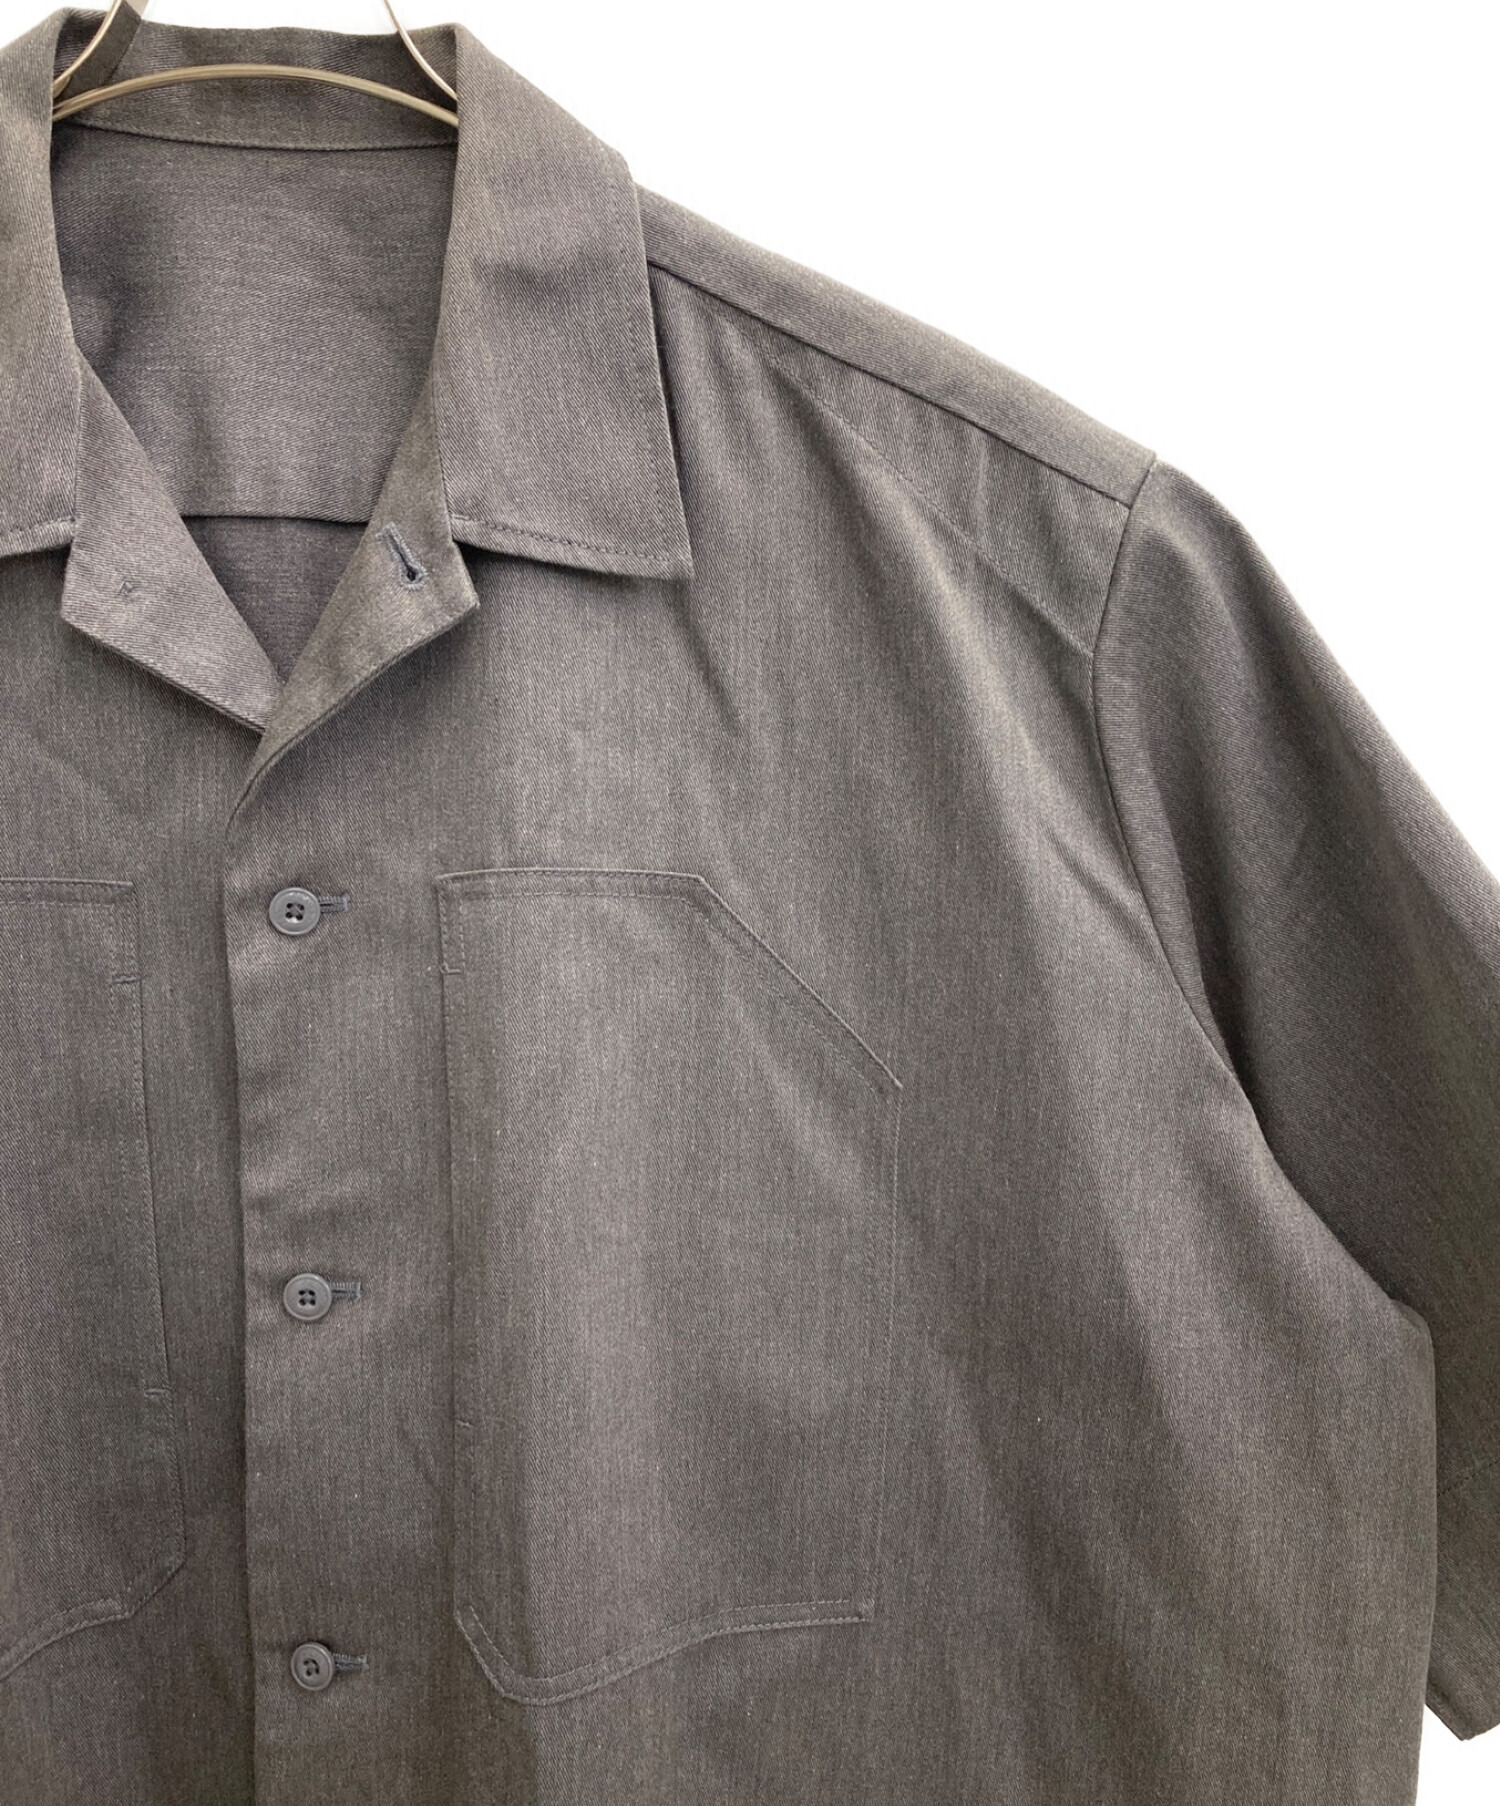 TARO HORIUCHI × Dickis (タロウ ホリウチ×ディッキーズ) Oversized Shirt グレー サイズ:46